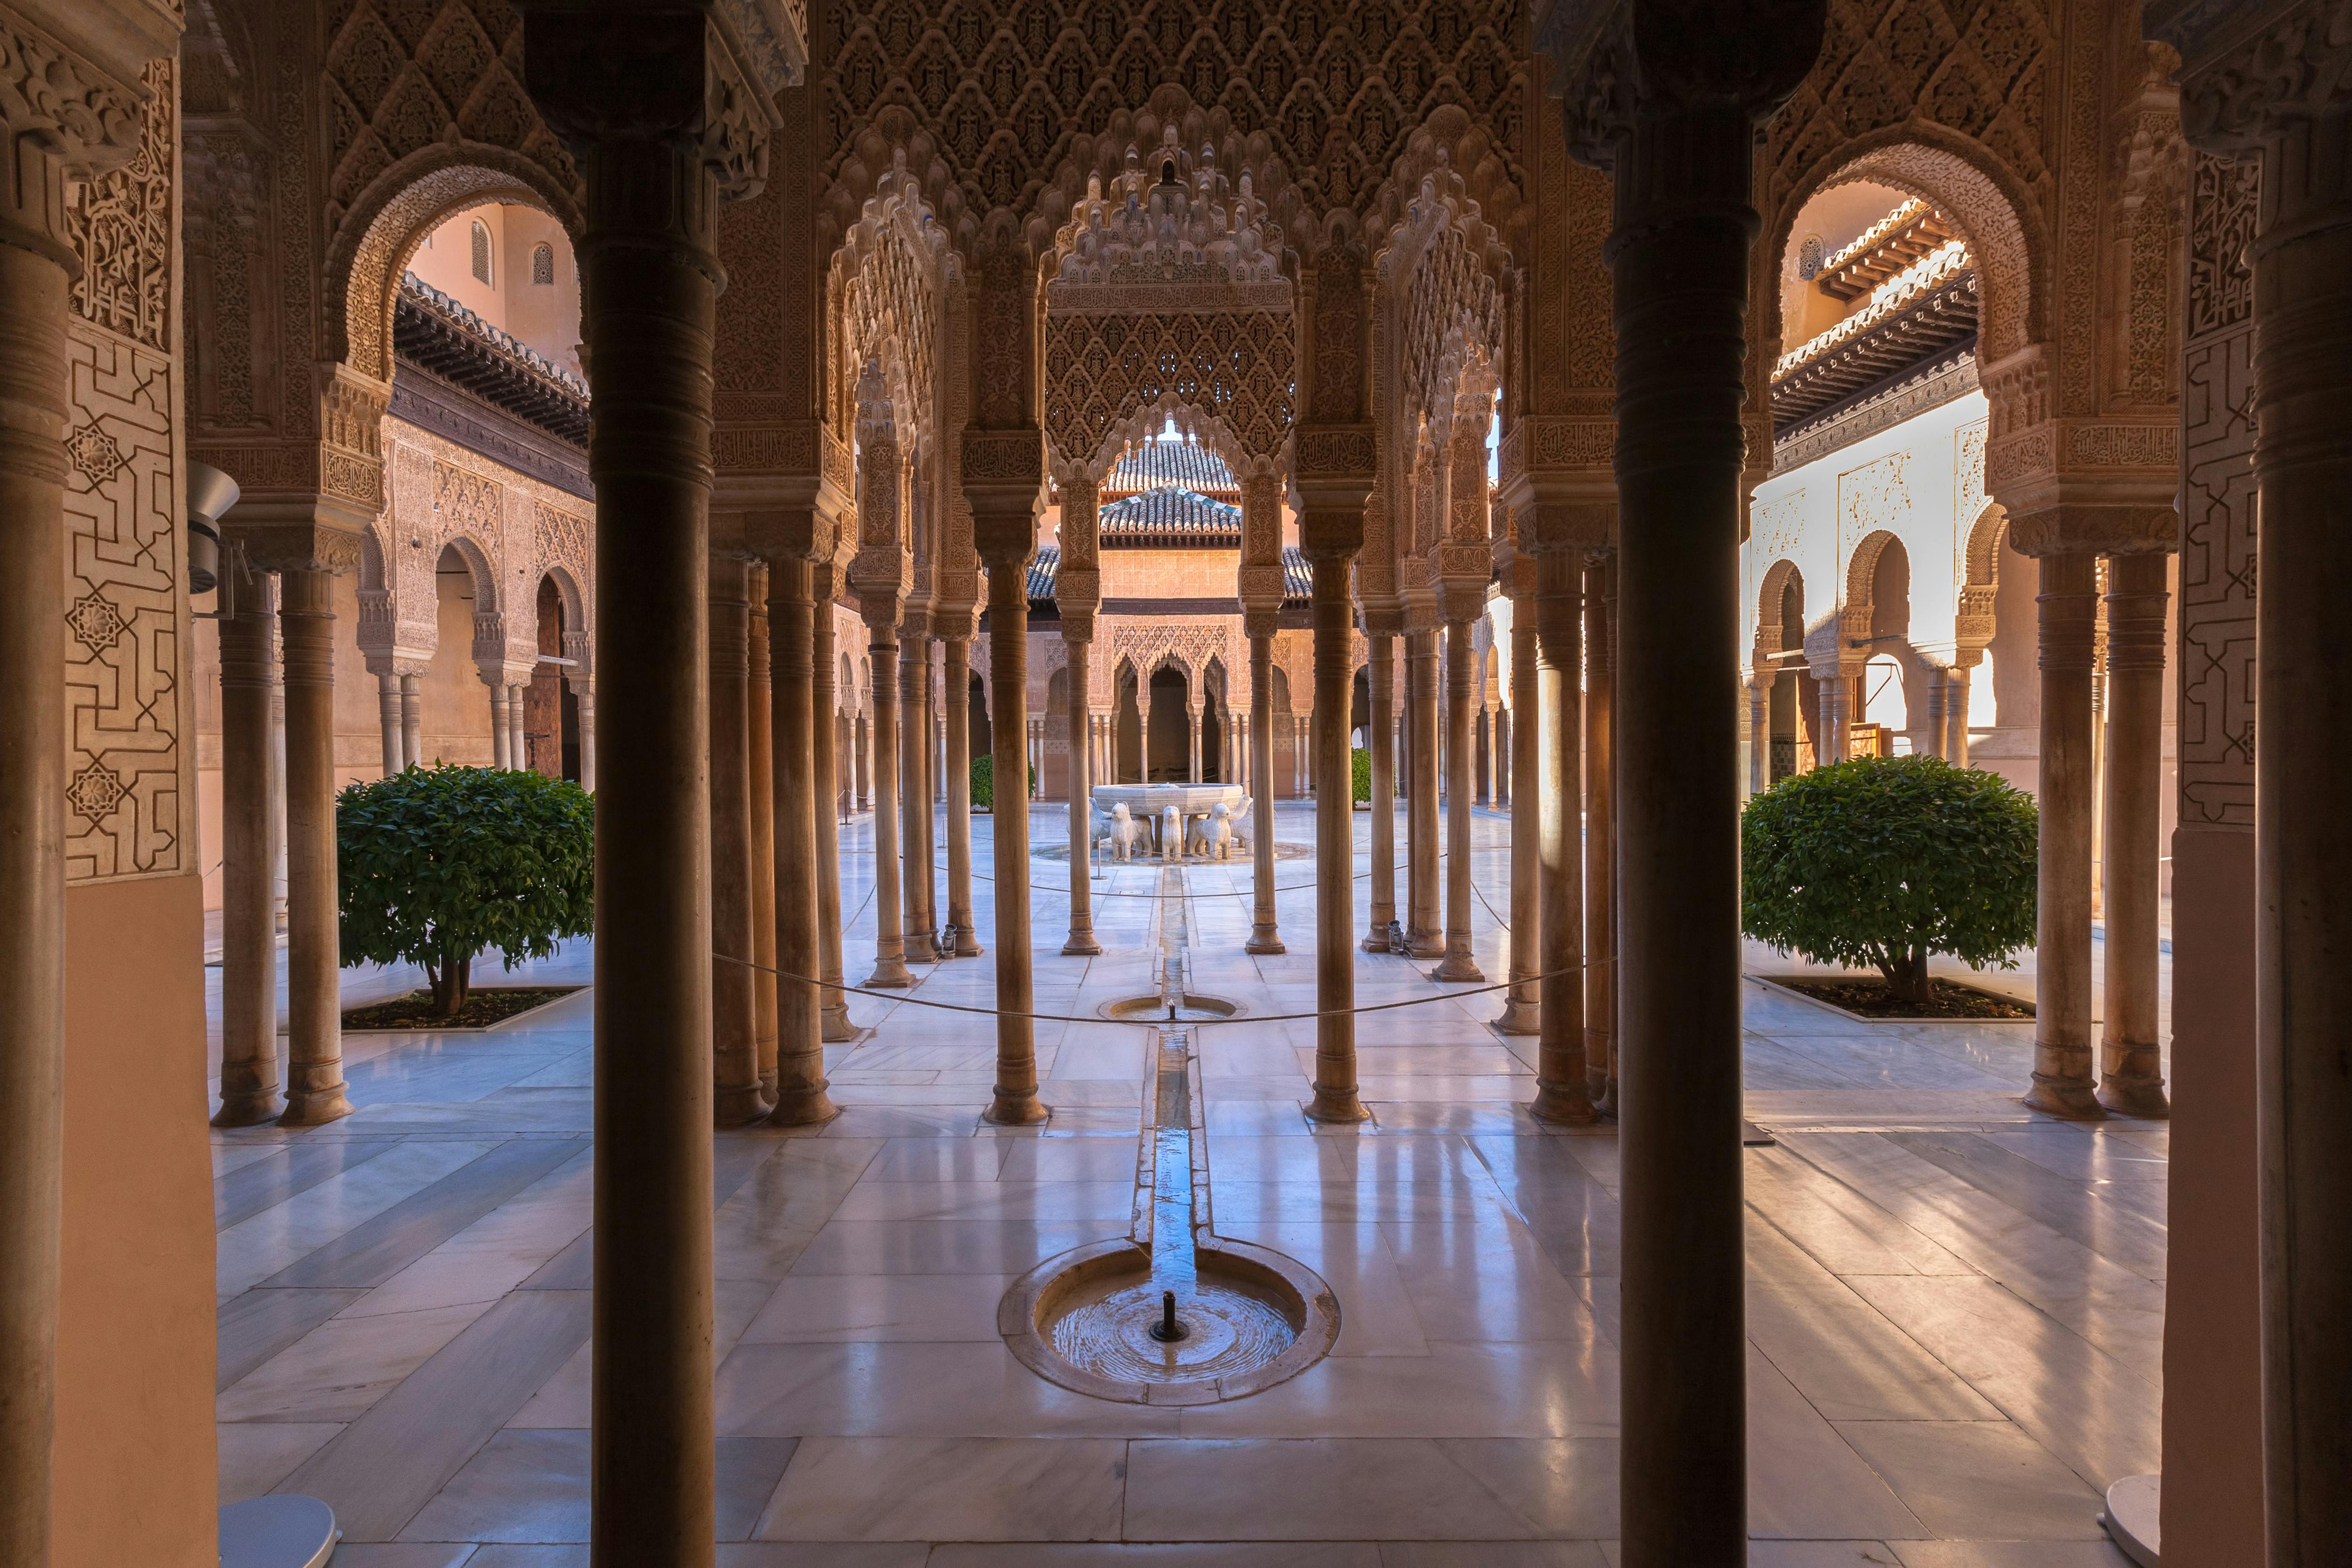 Toegangskaarten voor het Alhambra met audiogids